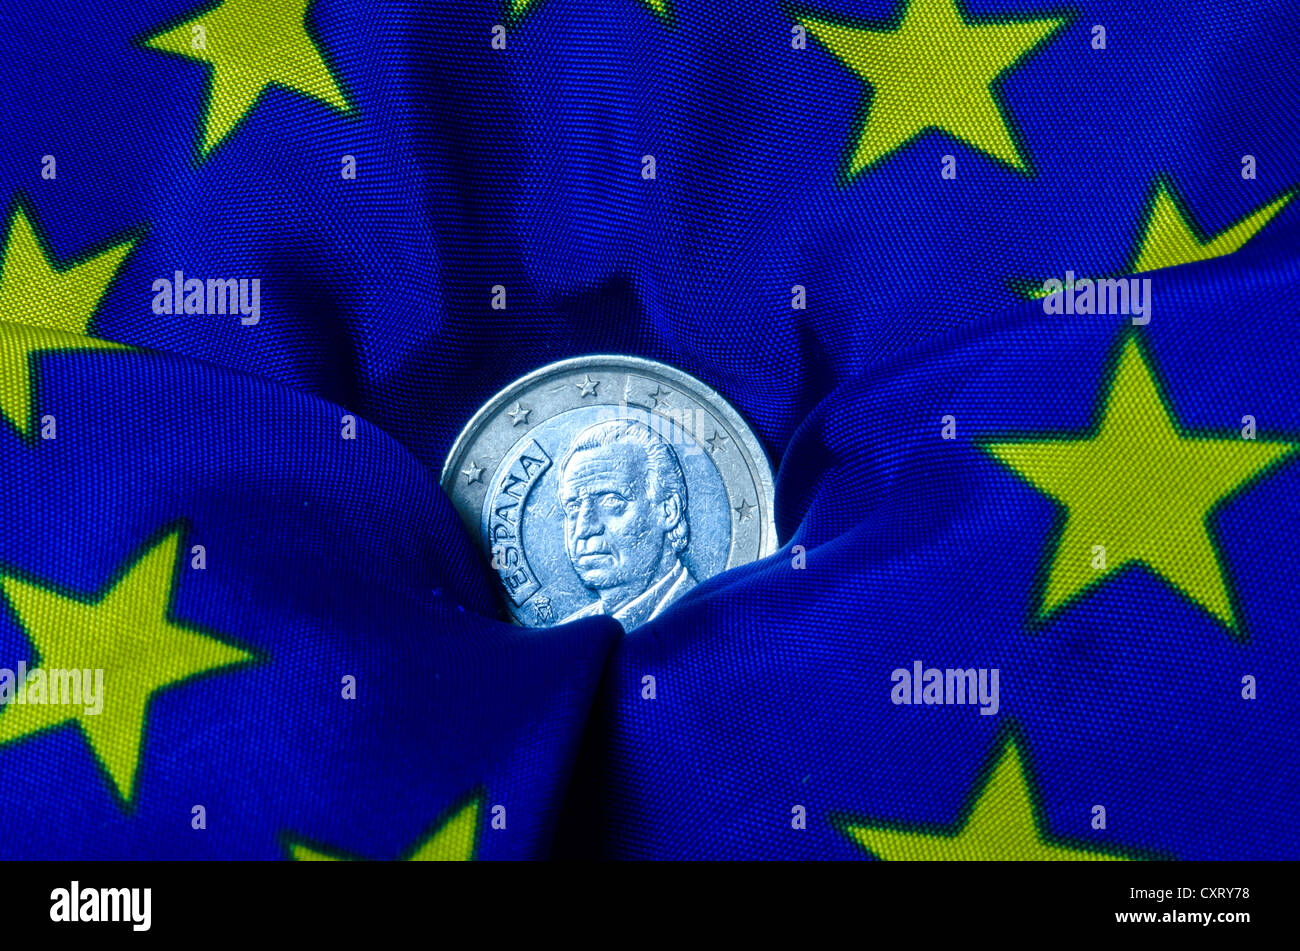 Lo spagnolo euro moneta giacente su una bandiera europea, andando verso il basso, immagine simbolica Foto Stock